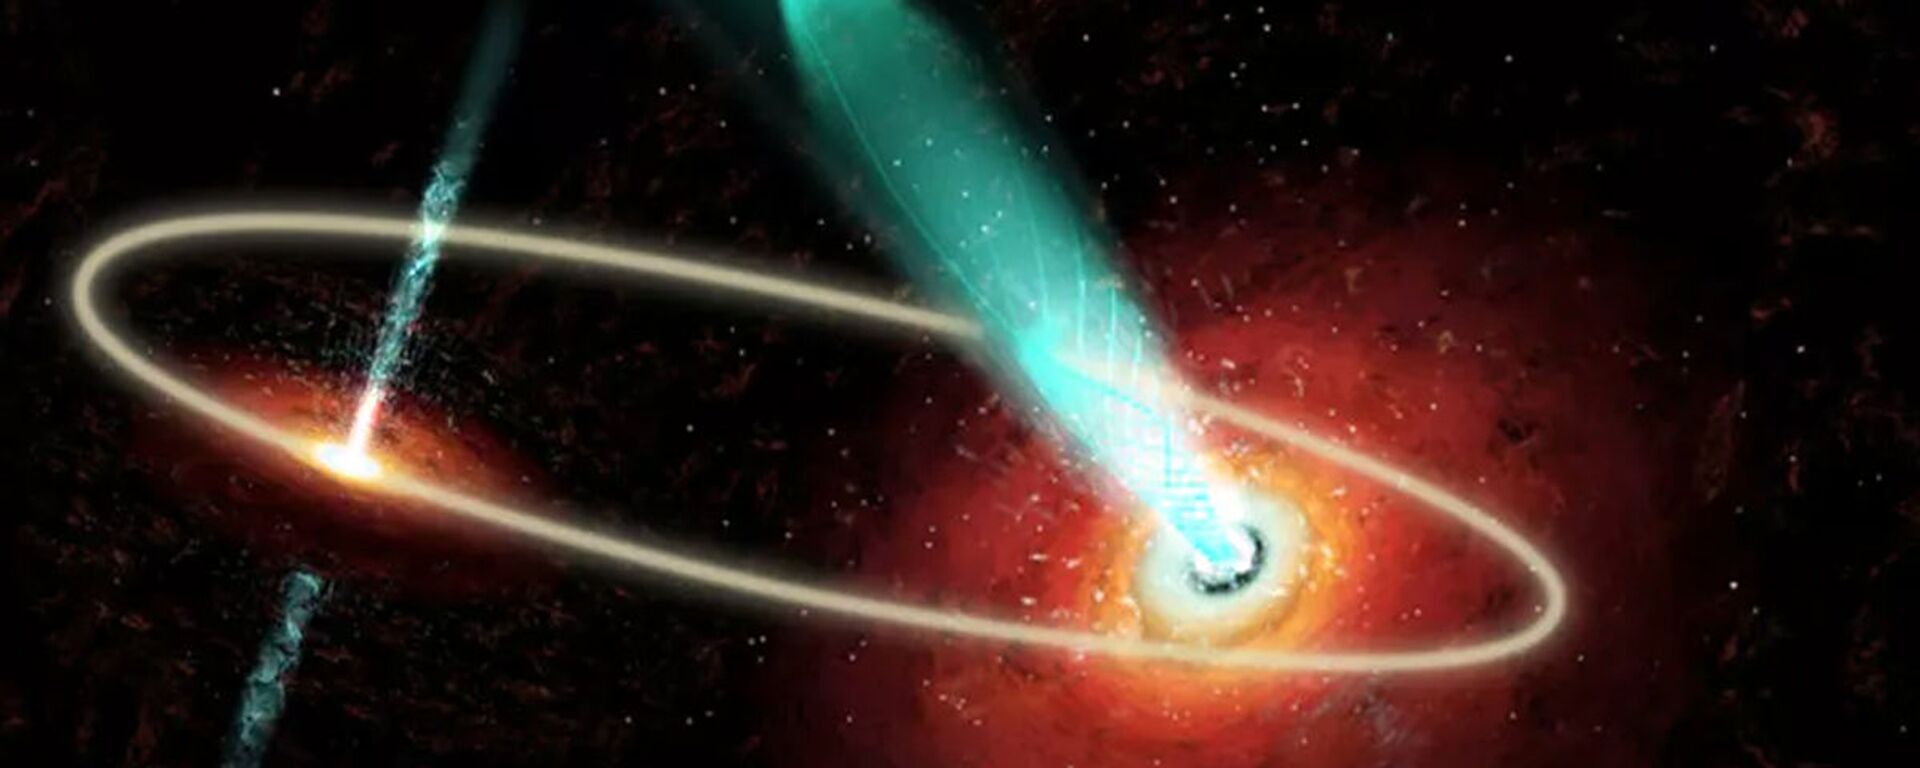 Пара сверхмассивных черных дыр в центре галактики OJ 287 - Sputnik Latvija, 1920, 01.01.2020